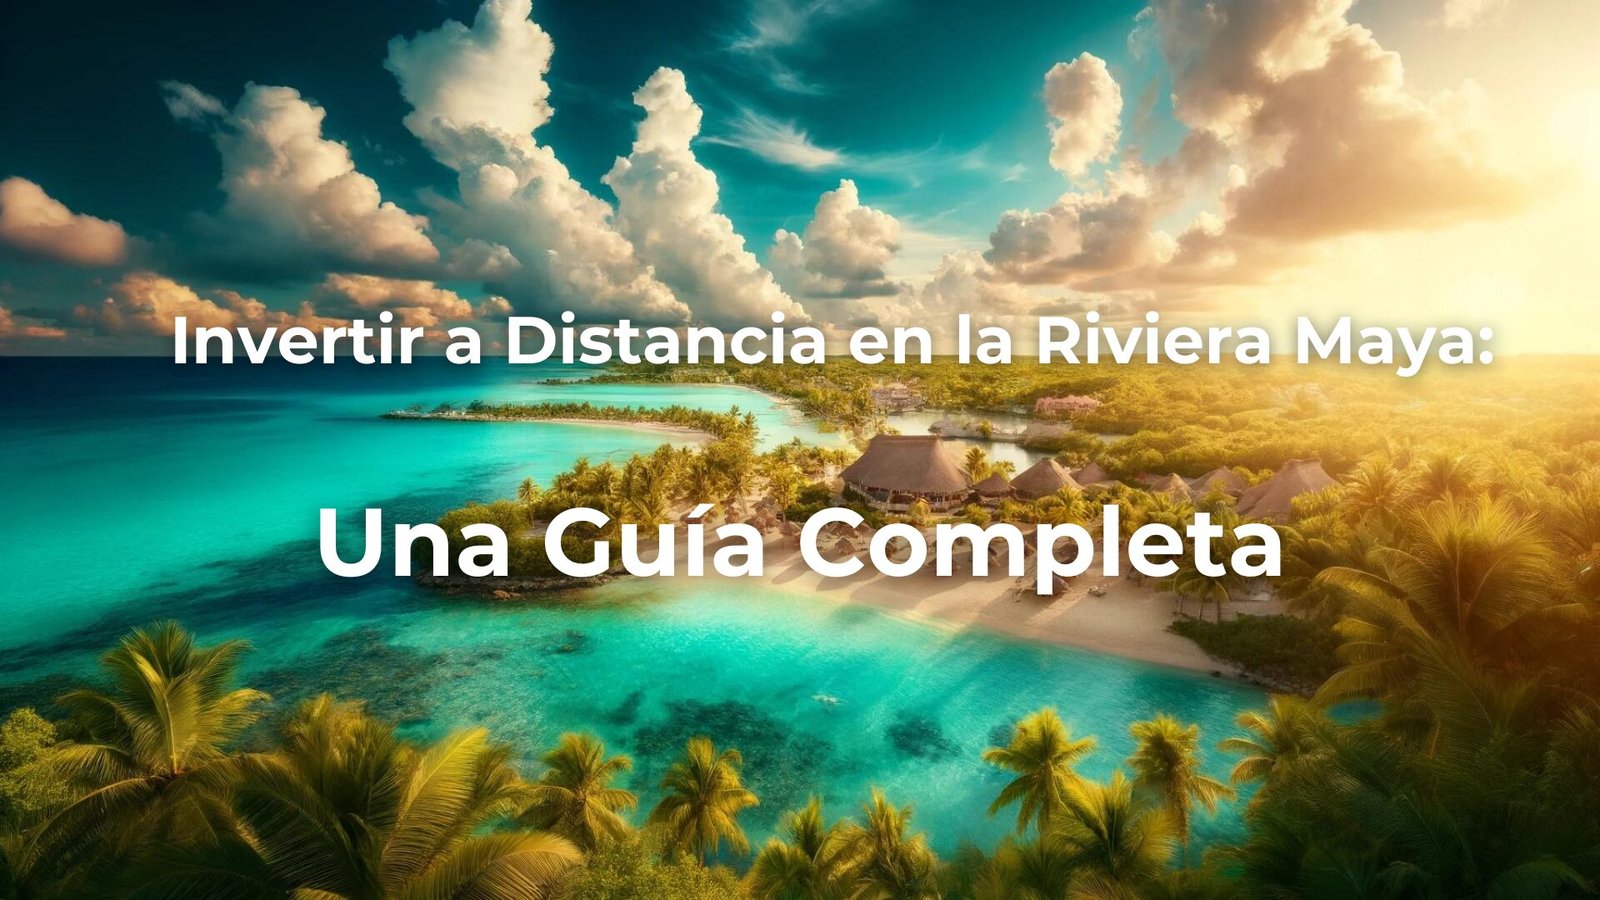 Invertir a Distancia en la Riviera Maya: Una Guía Completa